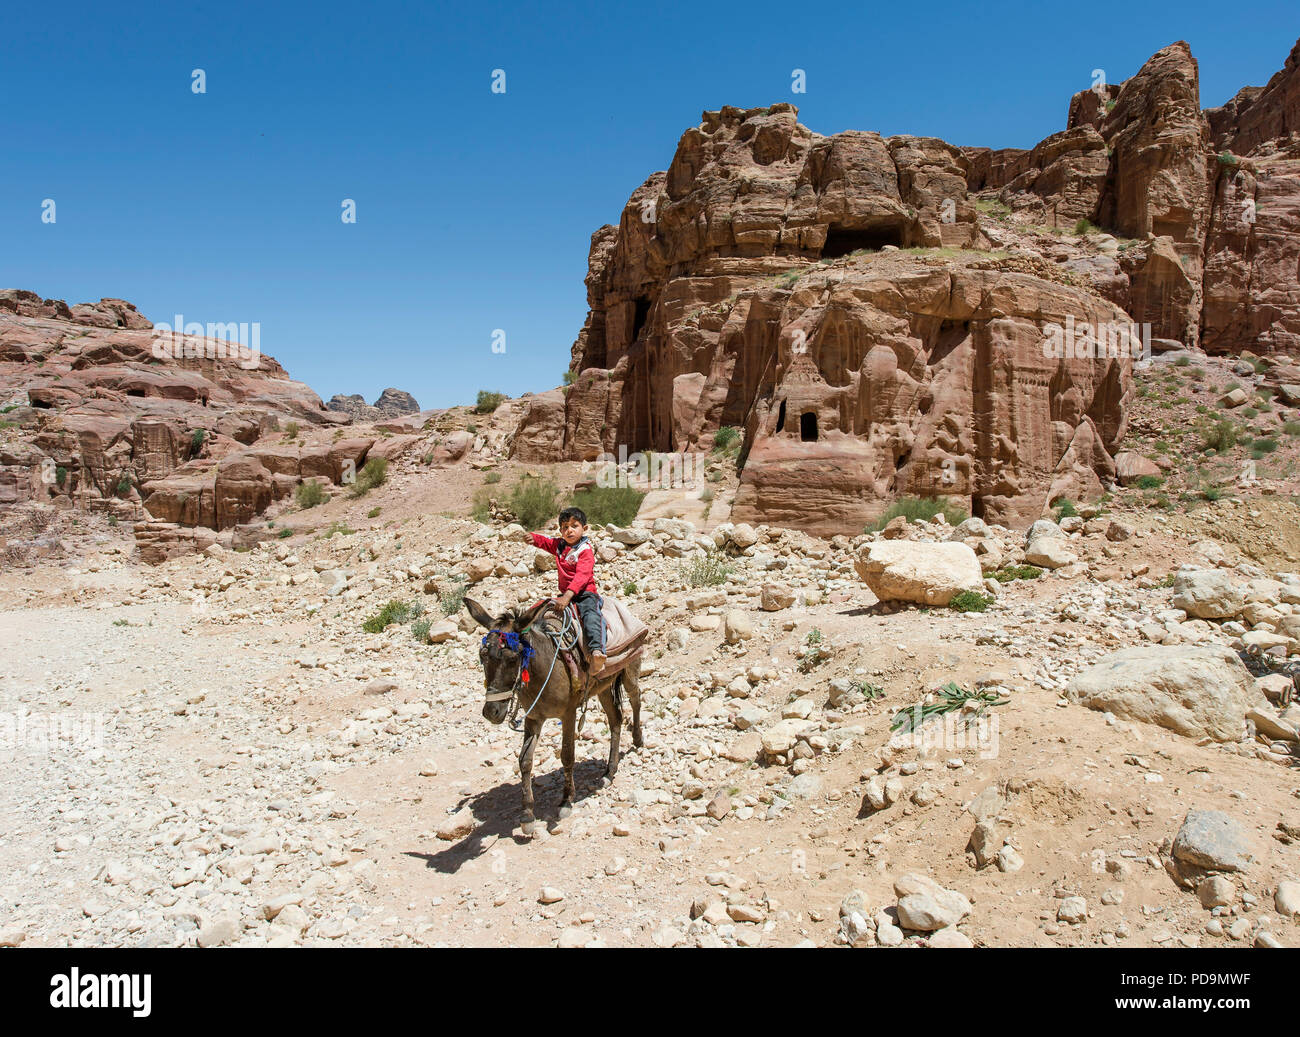 Little boy on a donkey, behind stone tombs, Petra, Jordan Stock Photo